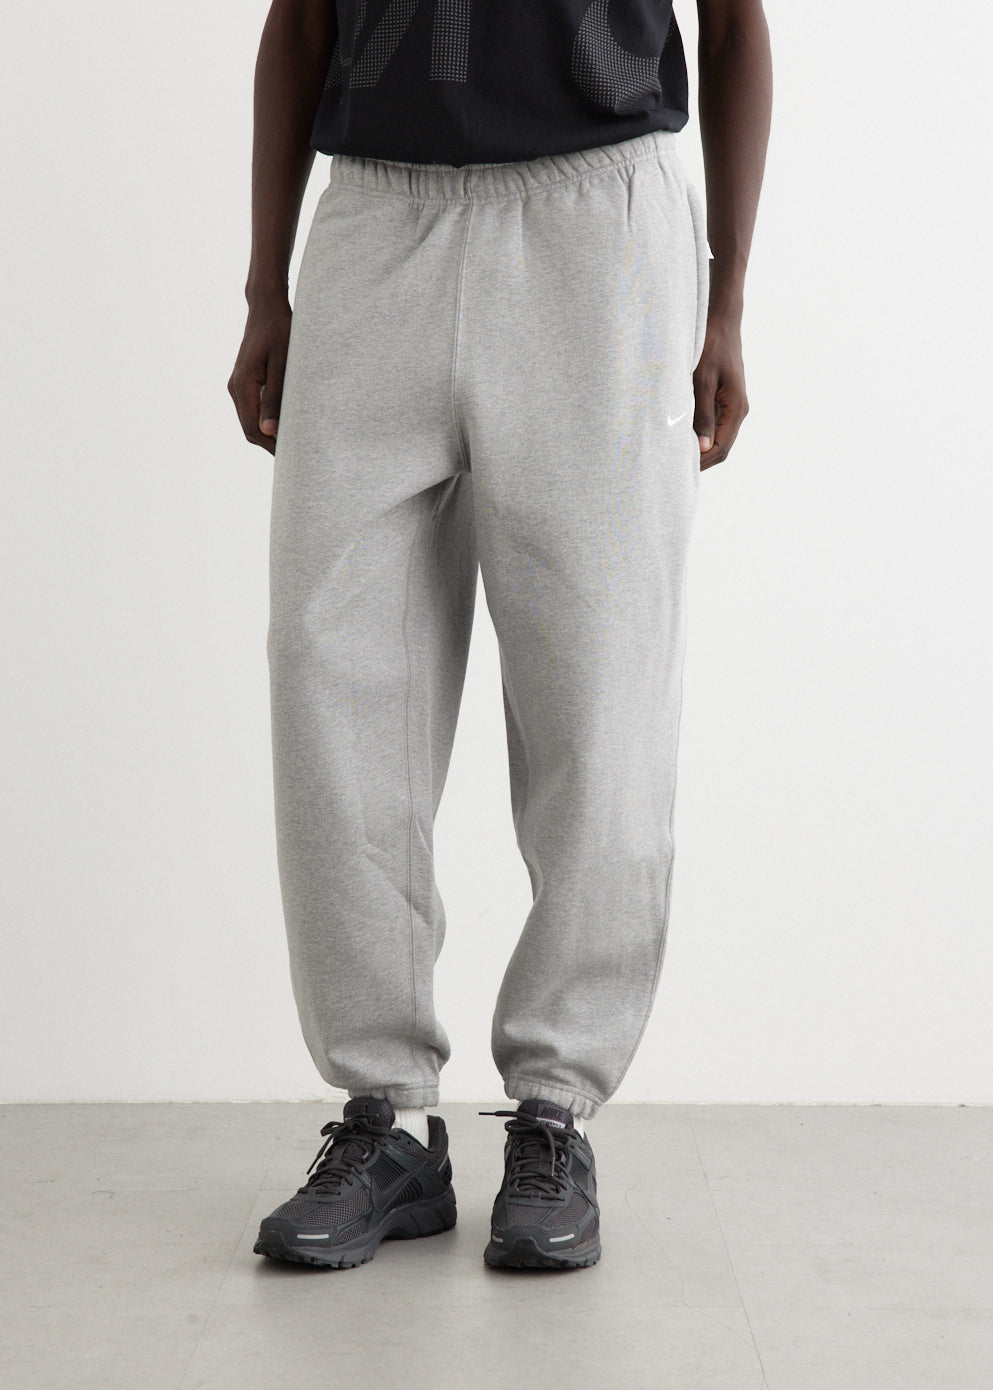 Nike NikeLab Fleece Pants Grey